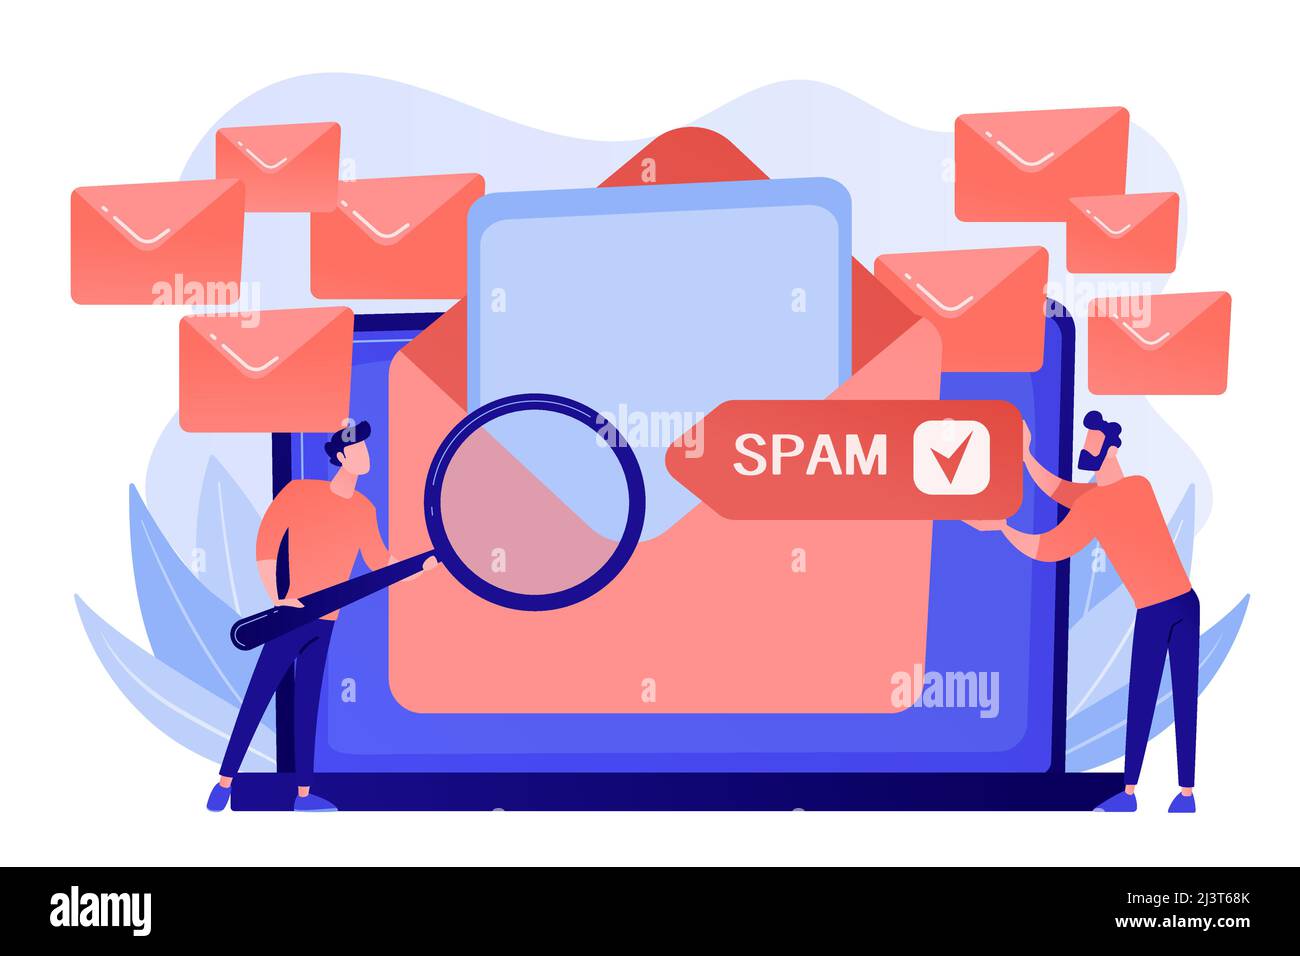 Geschäftsleute erhalten Werbung, Phishing, Verbreitung von Malware irrelevante unerwünschte Spam-Nachrichten. Spam, unerwünschte Nachrichten, Malware-Verbreitung Konzept. P Stock Vektor